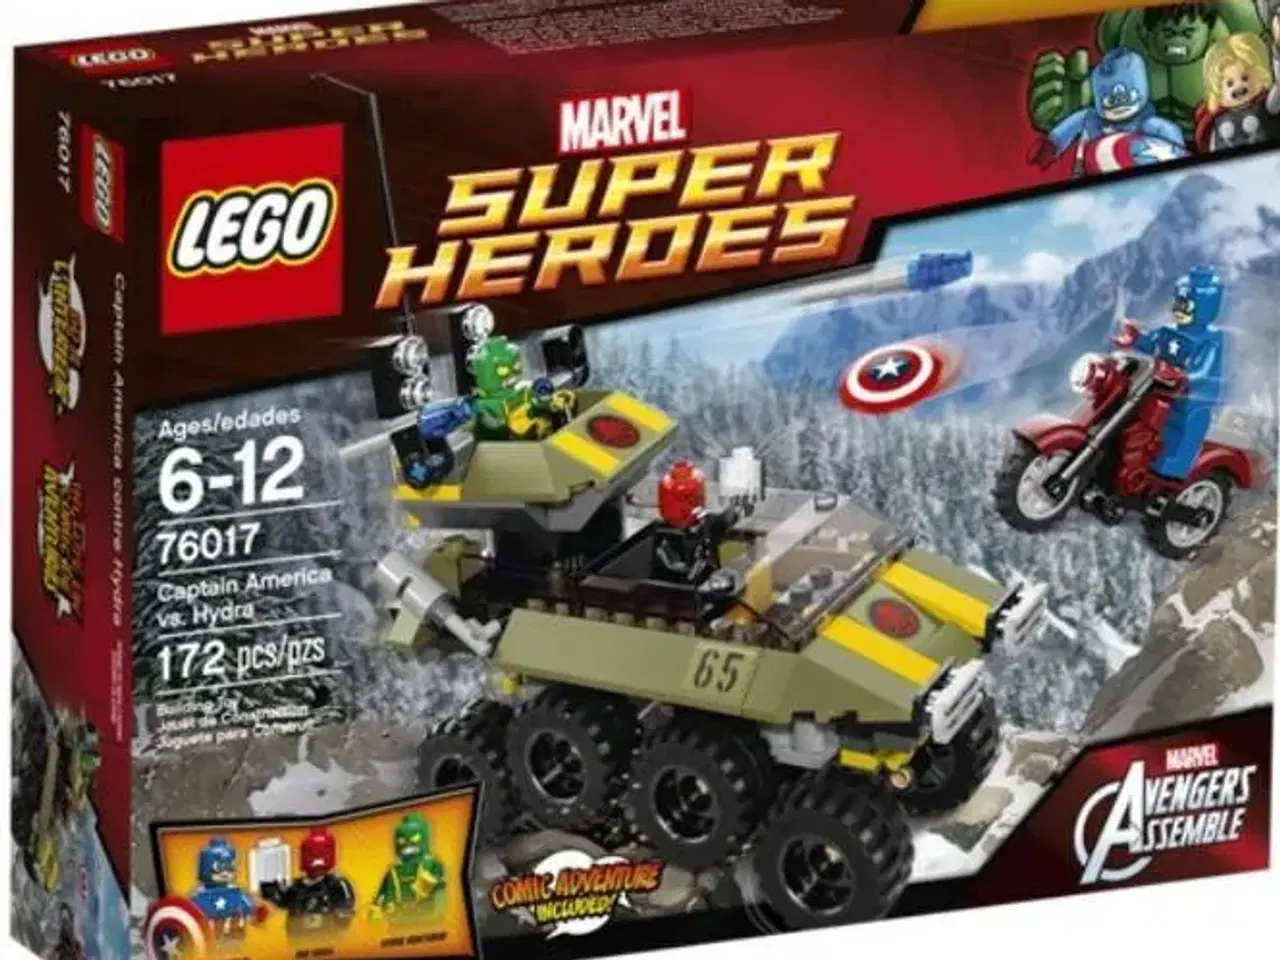 Billede 1 - Lego 76017 Super Heroes sælges billigt